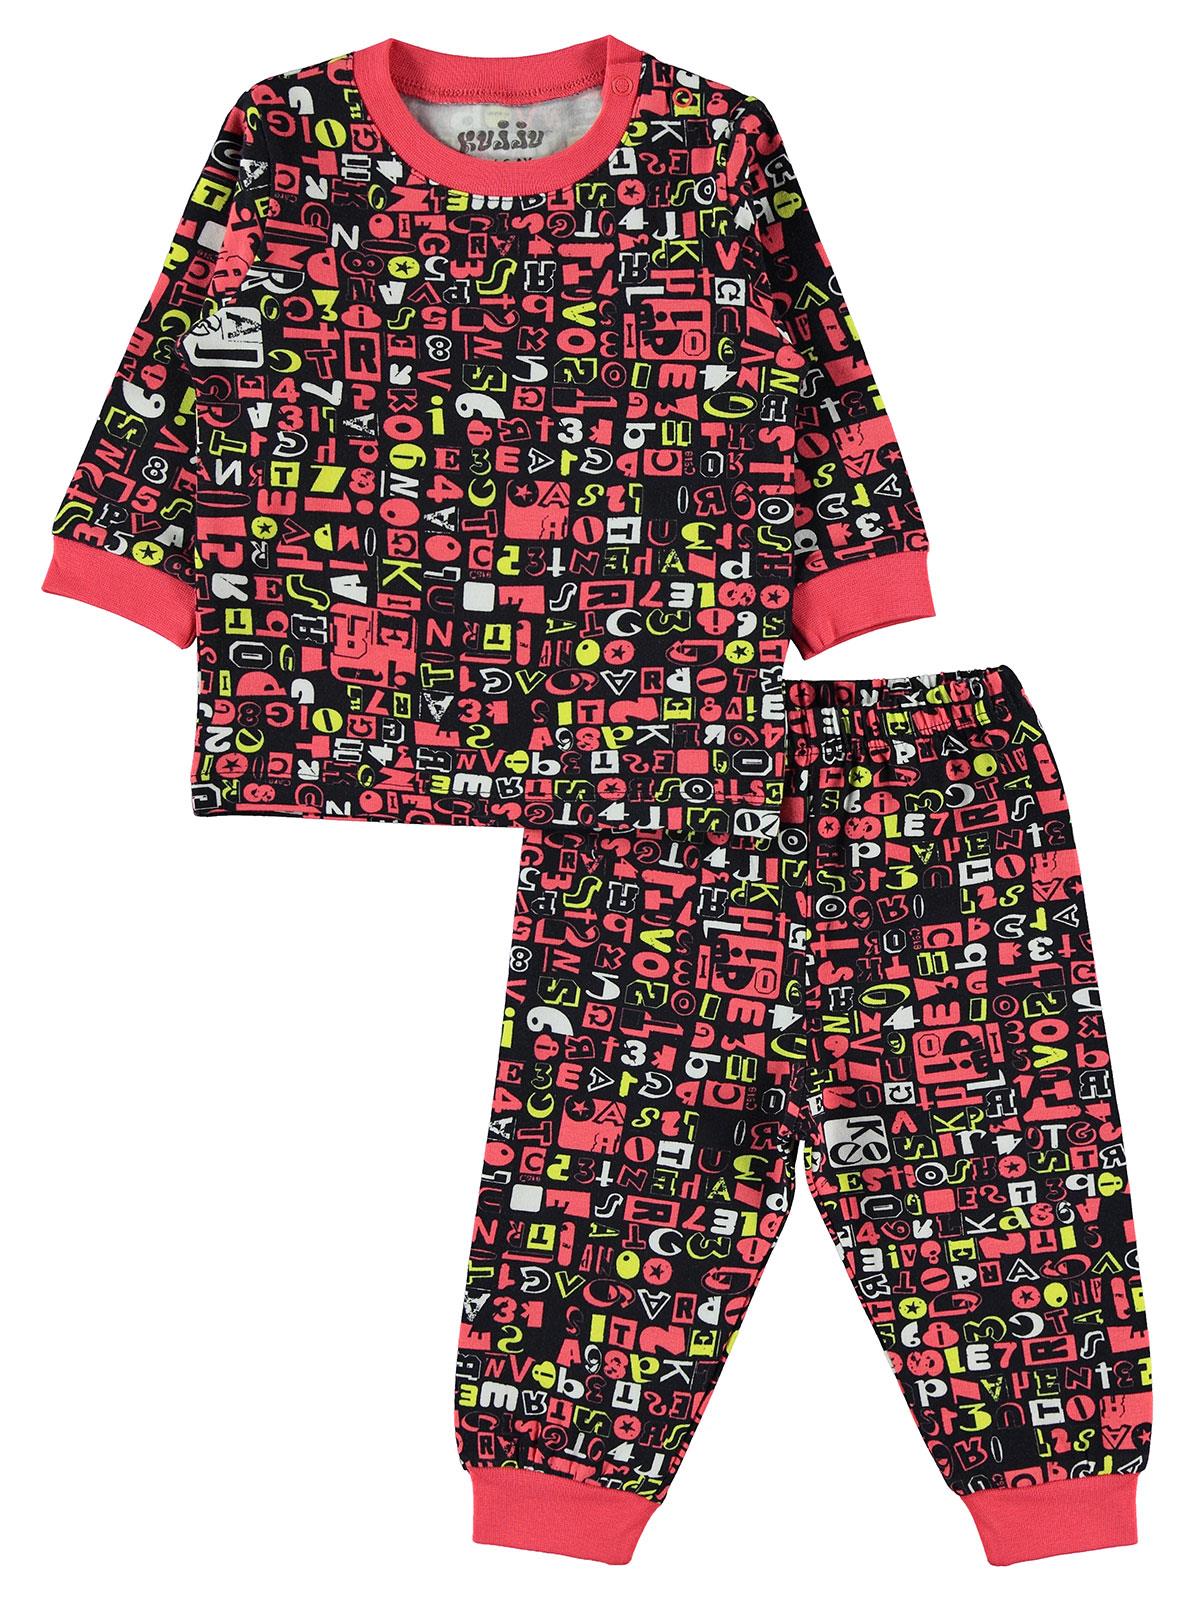 Kujju Bebek Pijama Takımı 6-18 Ay Siyah